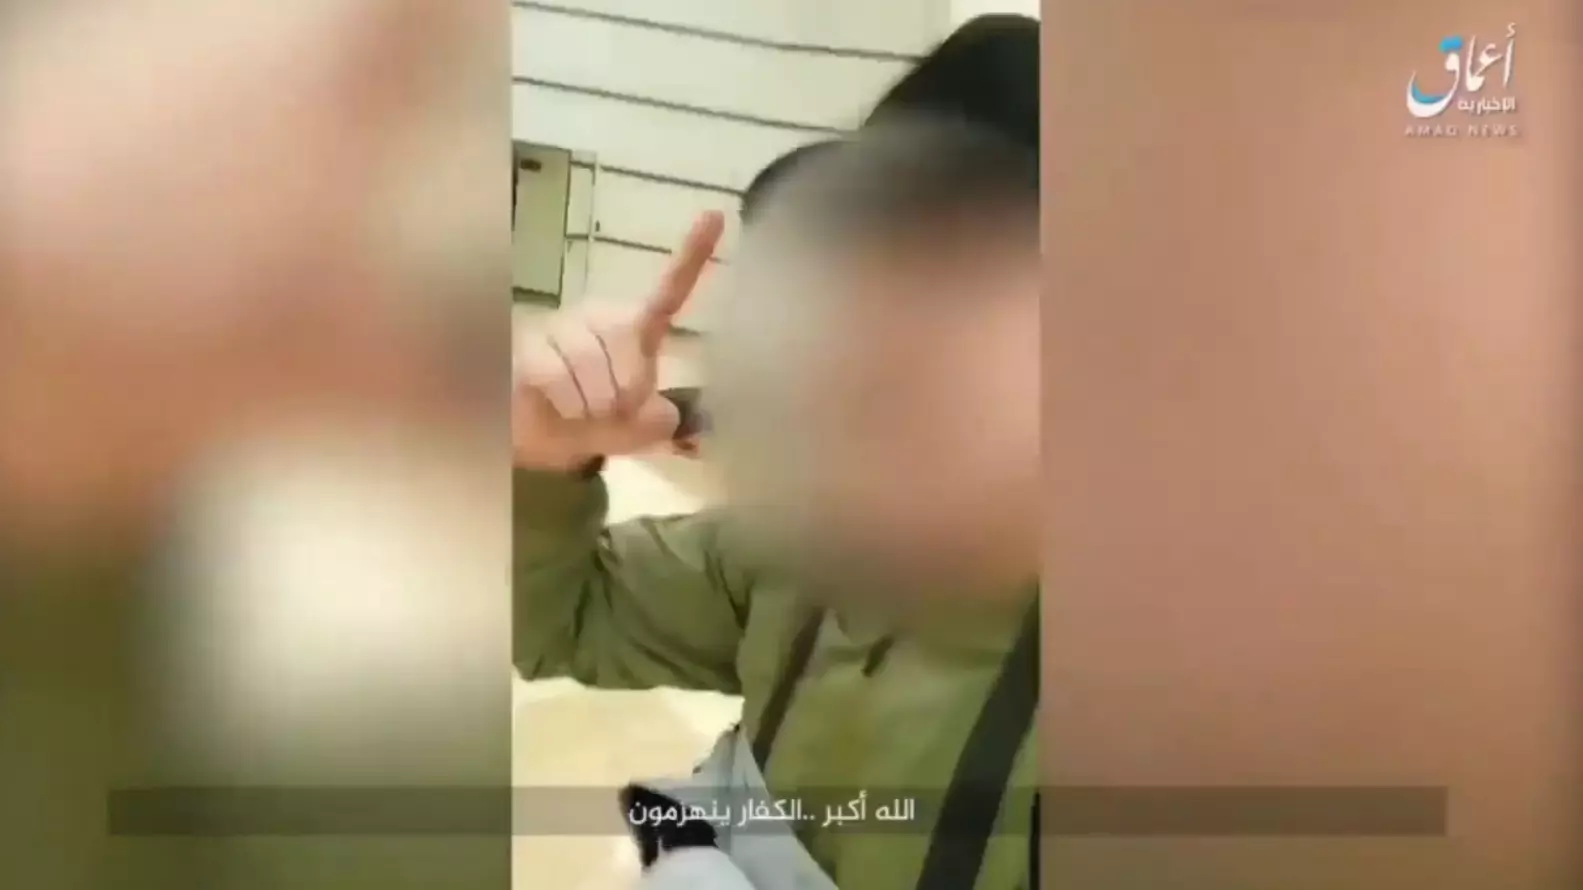 Террористы выложили видеоотчет с казнью посетителя в первые минуты нападения на «Крокус Сити Холл»